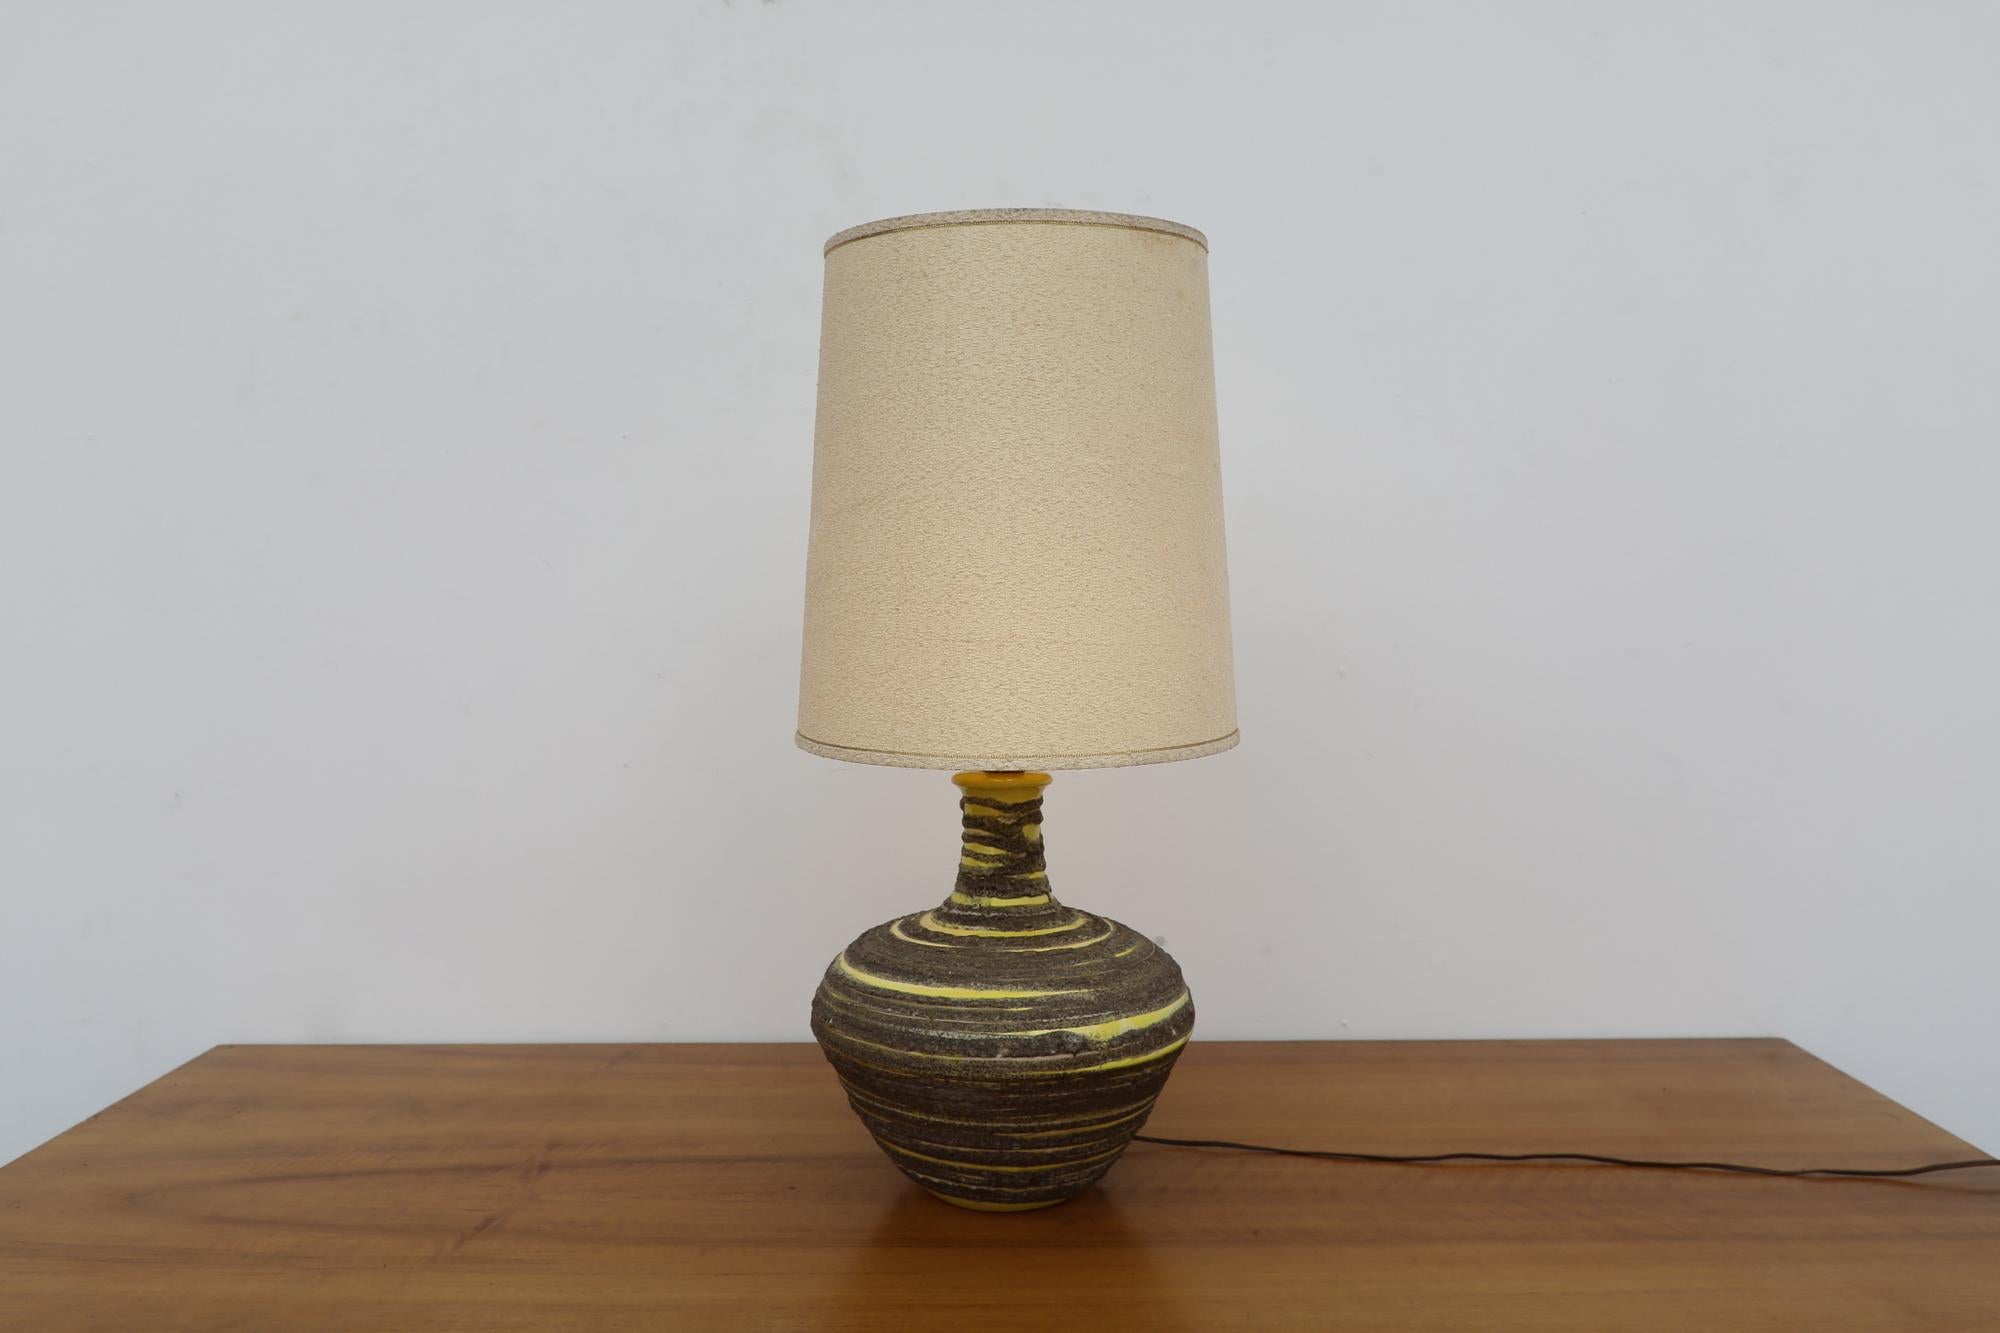 Lampe de table en céramique du milieu du siècle, joliment émaillée à la lave dans un tourbillon jaune et gris. Avec l'abat-jour d'origine. Dans un état général impressionnant, avec une certaine usure visible correspondant à son âge et à son